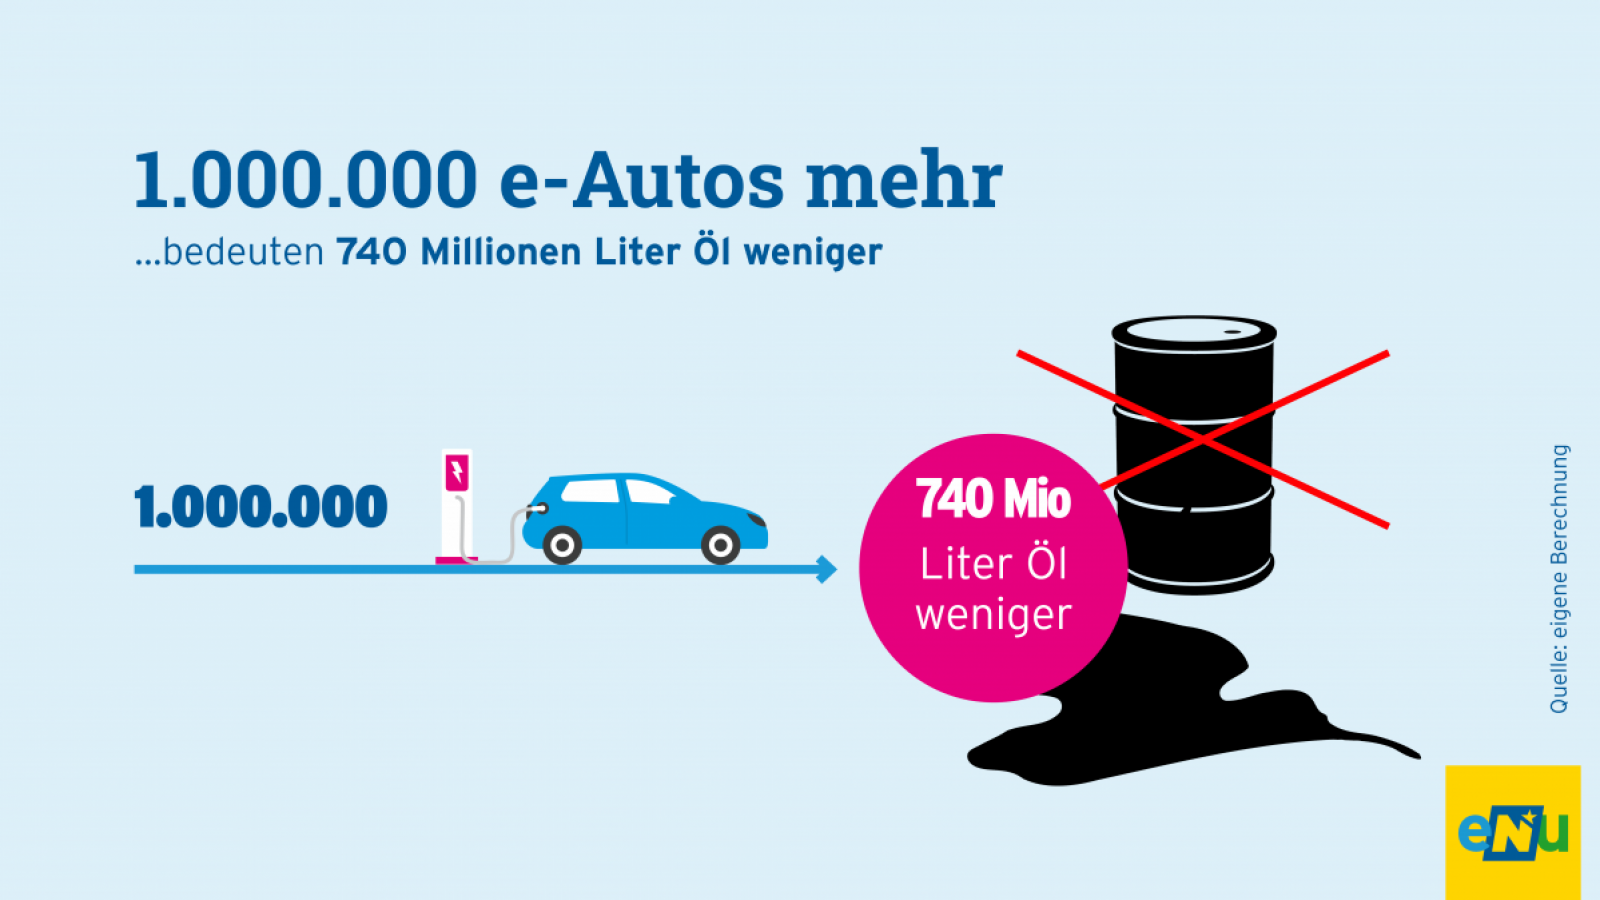 Grafik: 100.000 e-Autos mehr, bedeuten eine Einsparung von 74 Millionen Liter Erdöl pro Jahr. Die Stromversorgung dieser 100.000 e-Autos kann durch 17 neue Windräder abgedeckt werden.